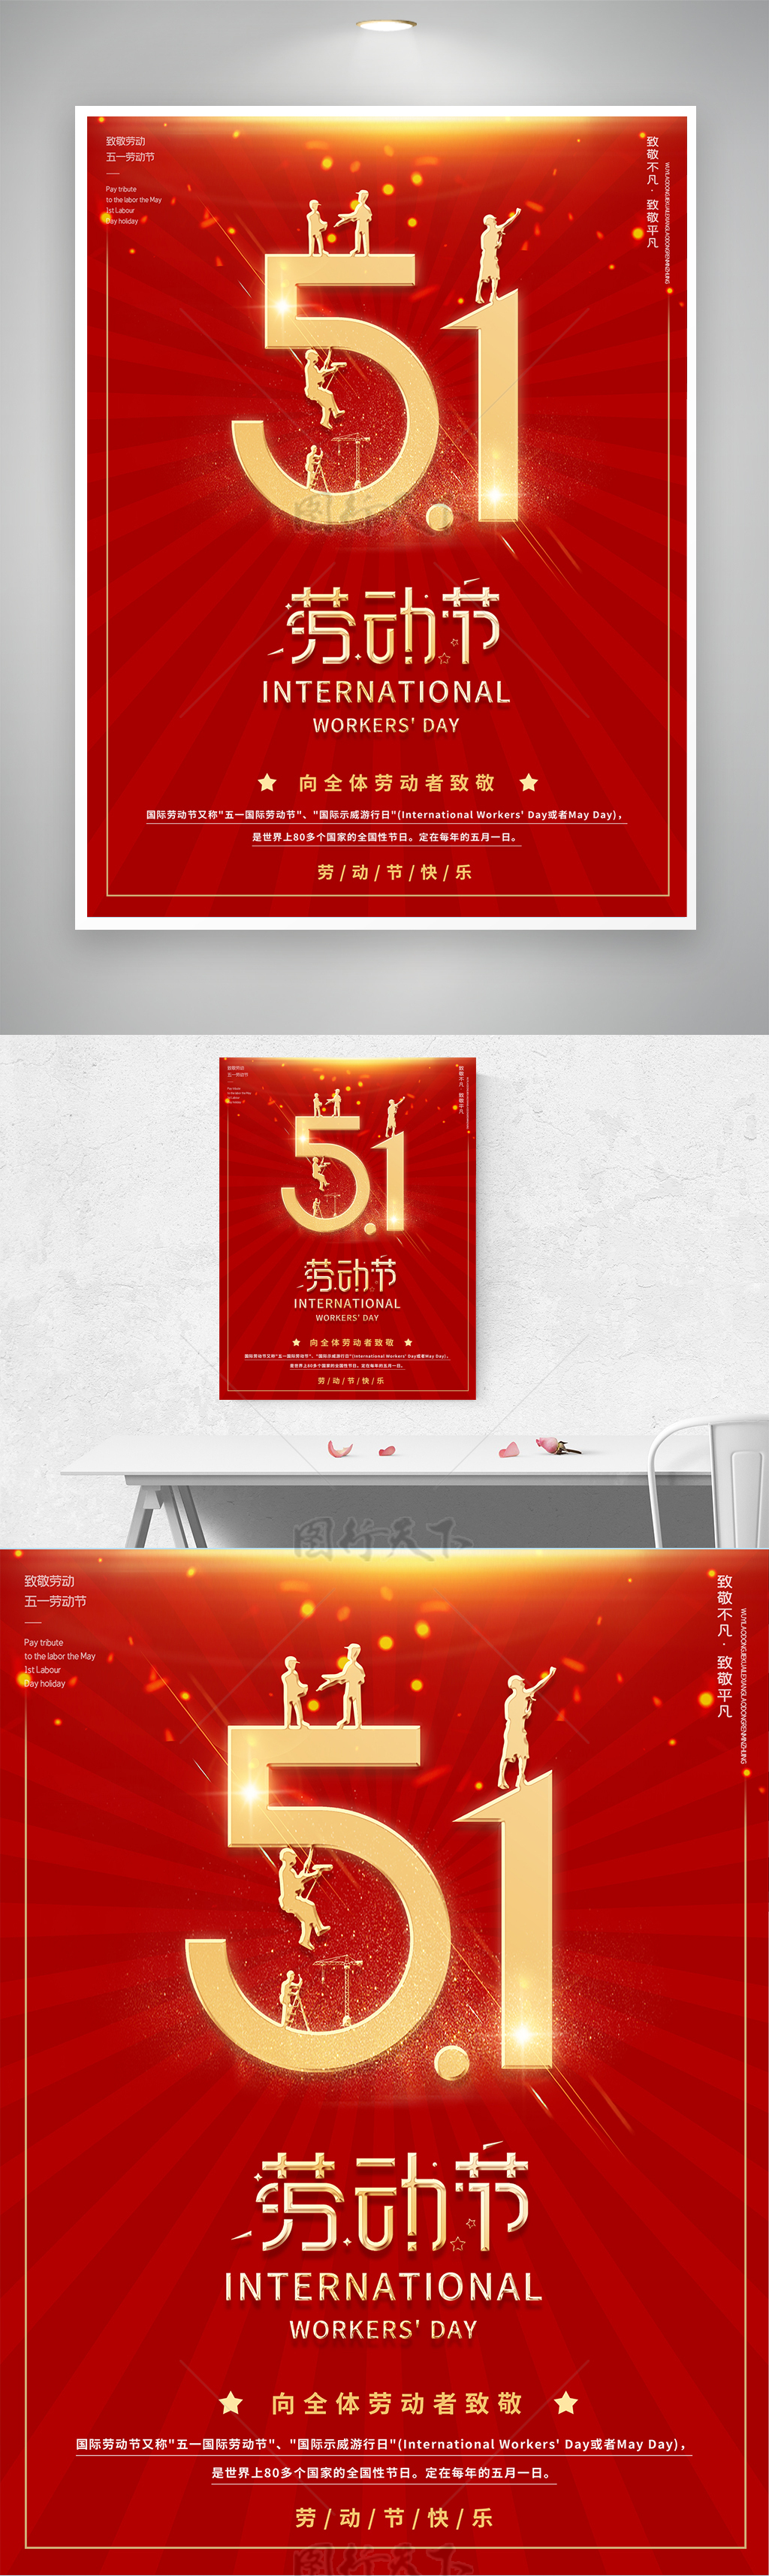 红色51五一劳动节展板海报